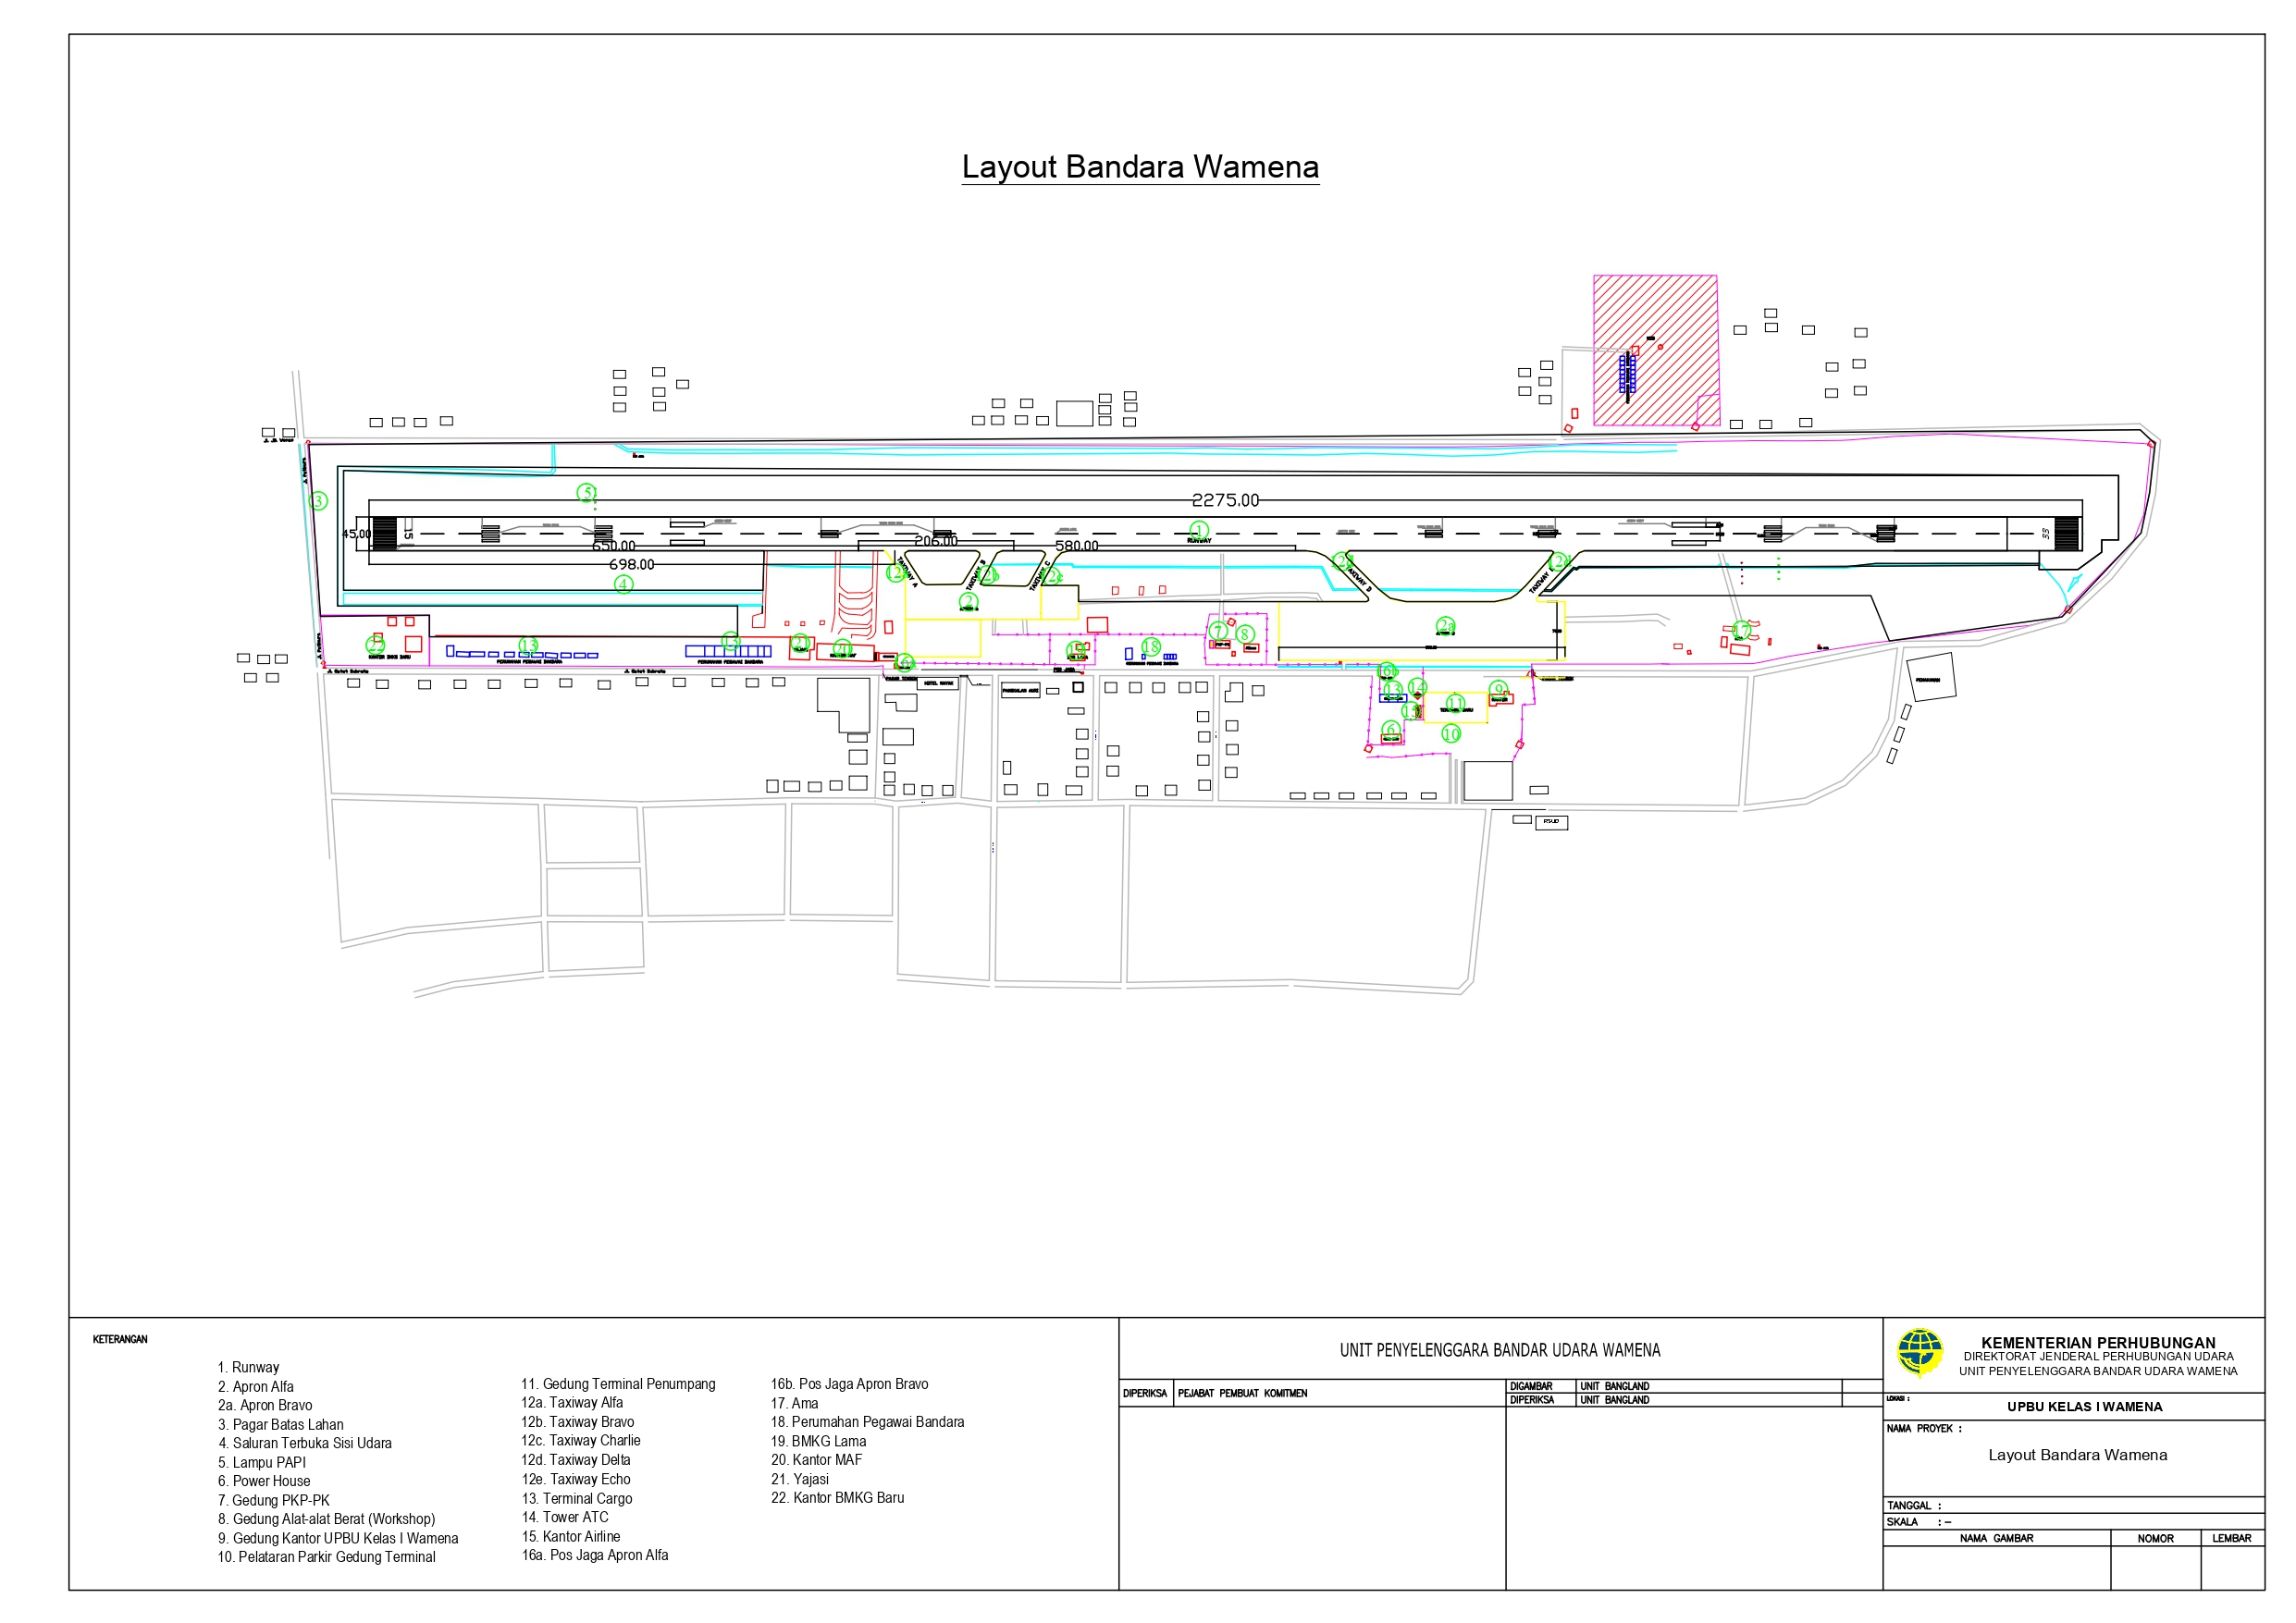 Gambar Peta Bandara Layout Bandara Wamena